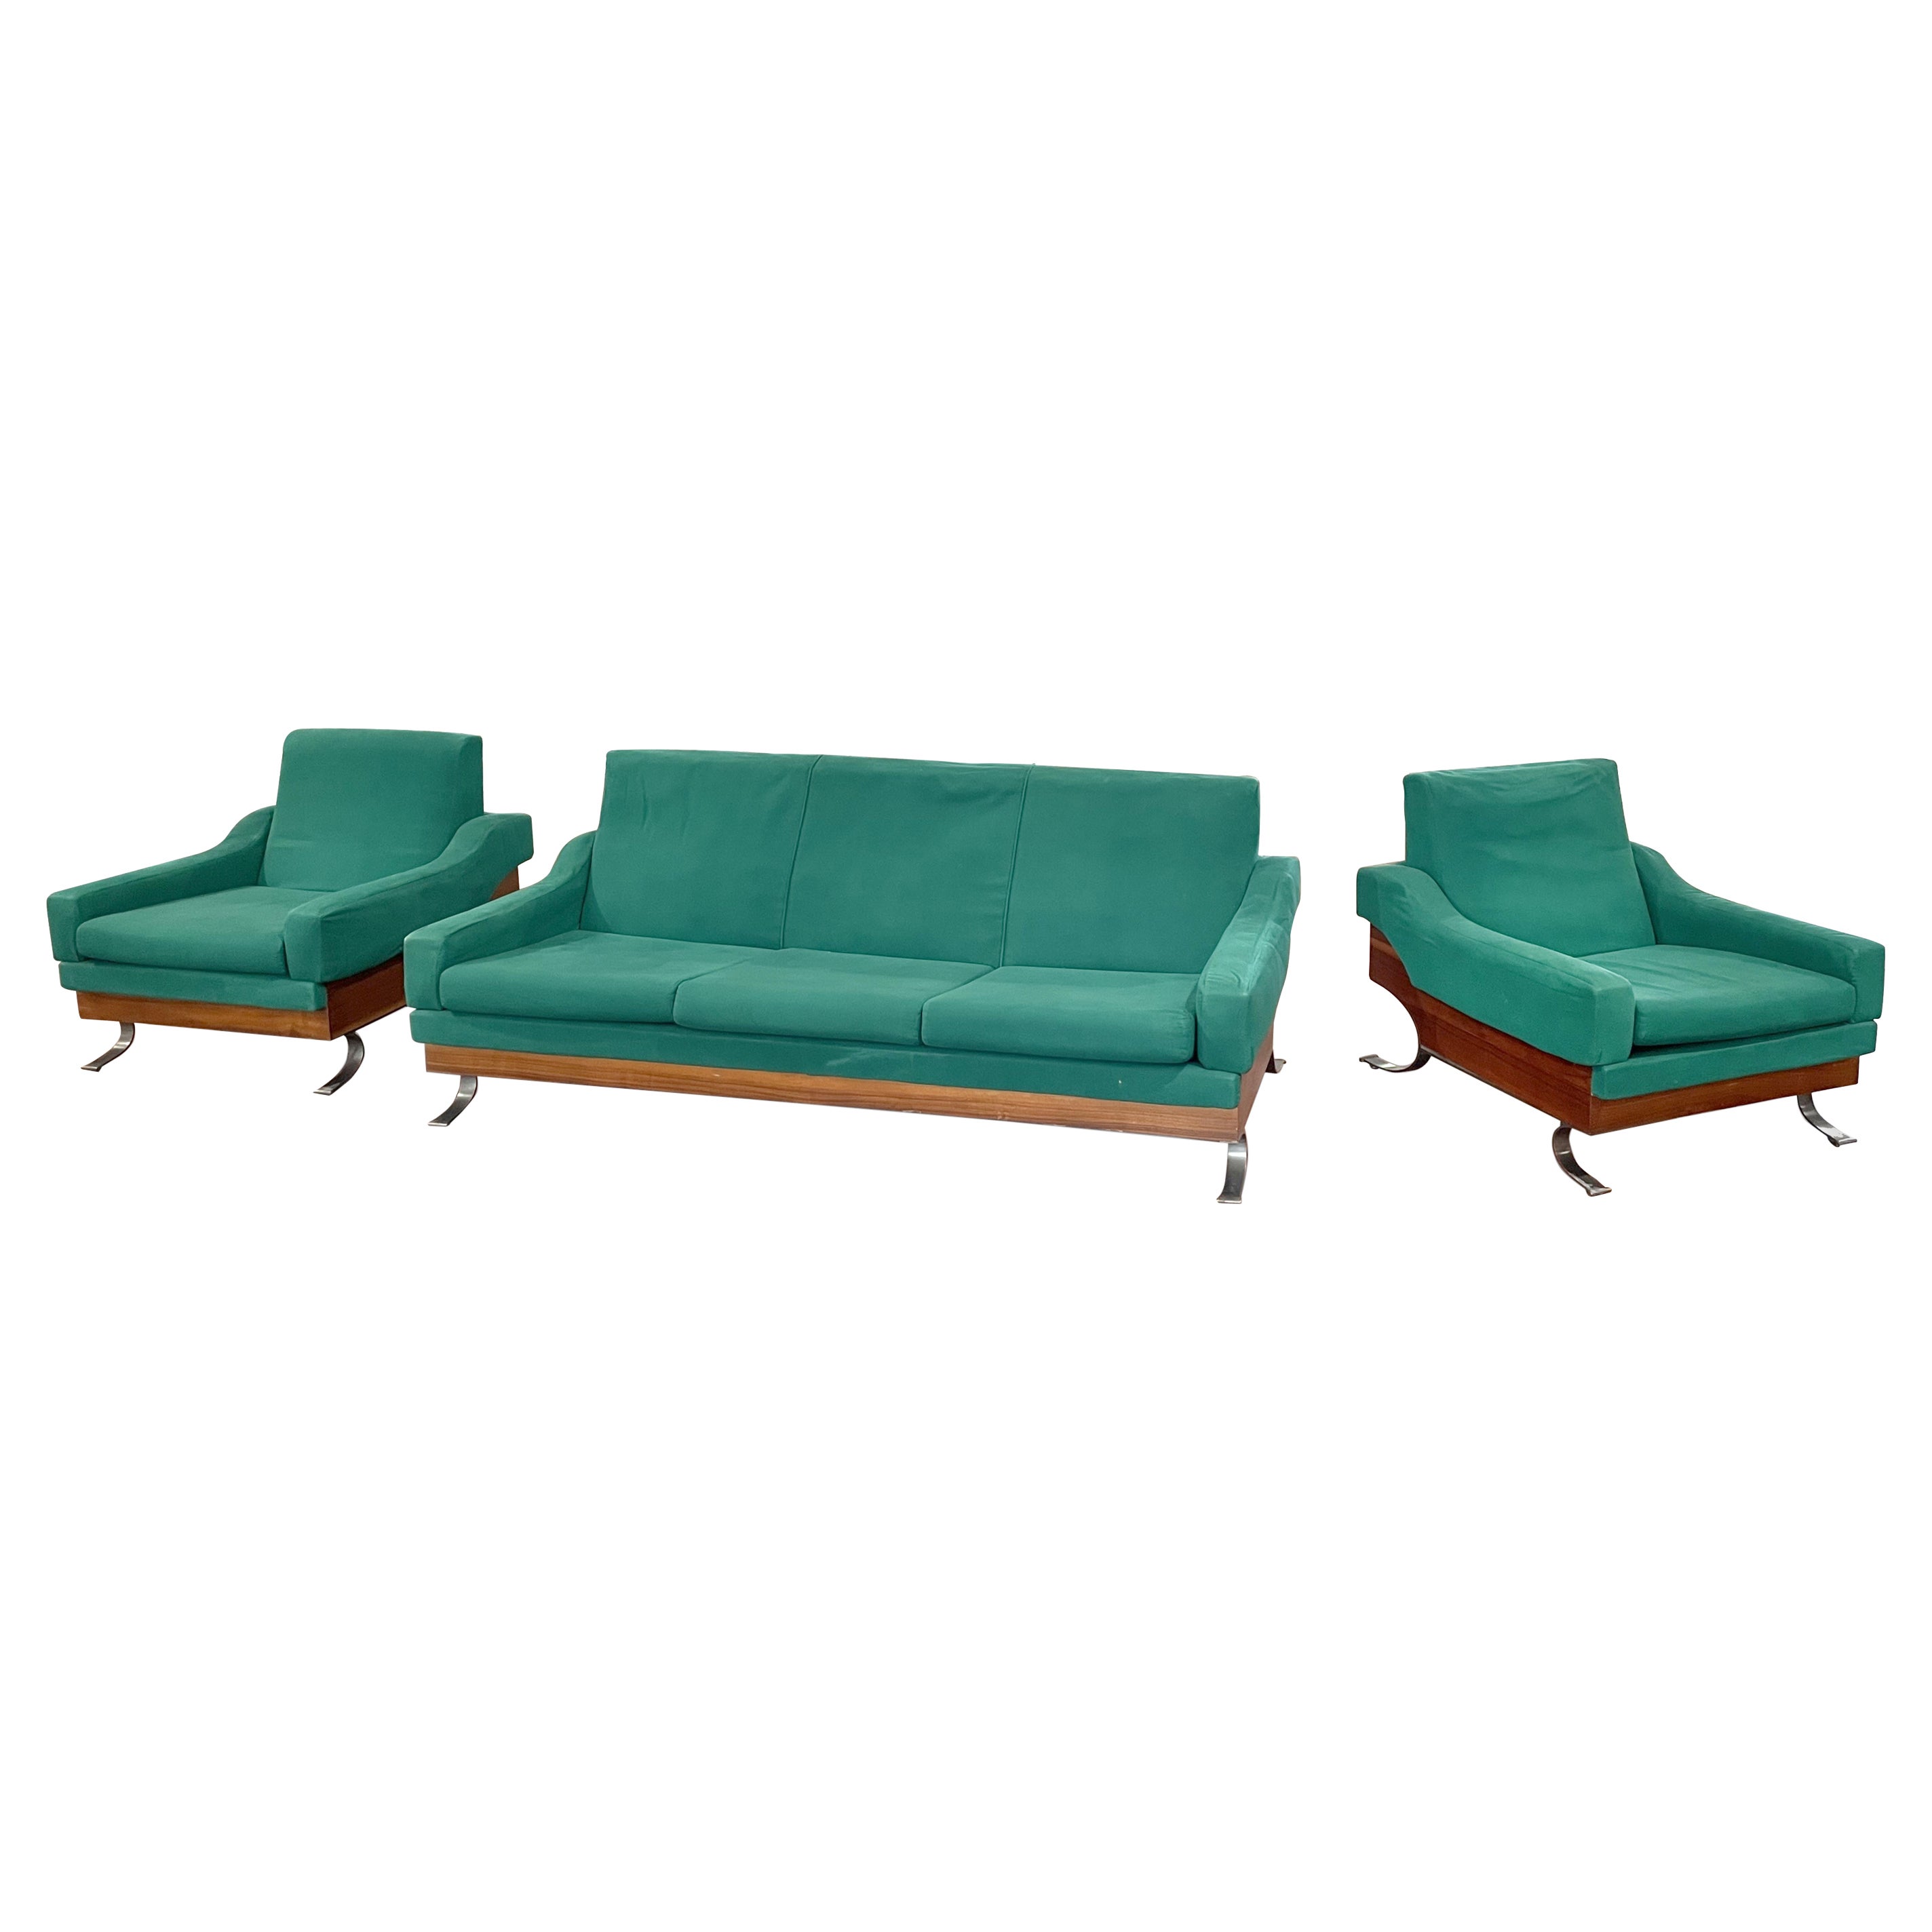 Ensemble de canapés vintage par Saporiti, Italie 1950s. Tapisserie d'origine, très rare dans l'ensemble fauteuils + canapé.

Fauteuils 70 x 84 x 94 cm chacun ; Canapé 180x84x94 cm.

Très bon état. 